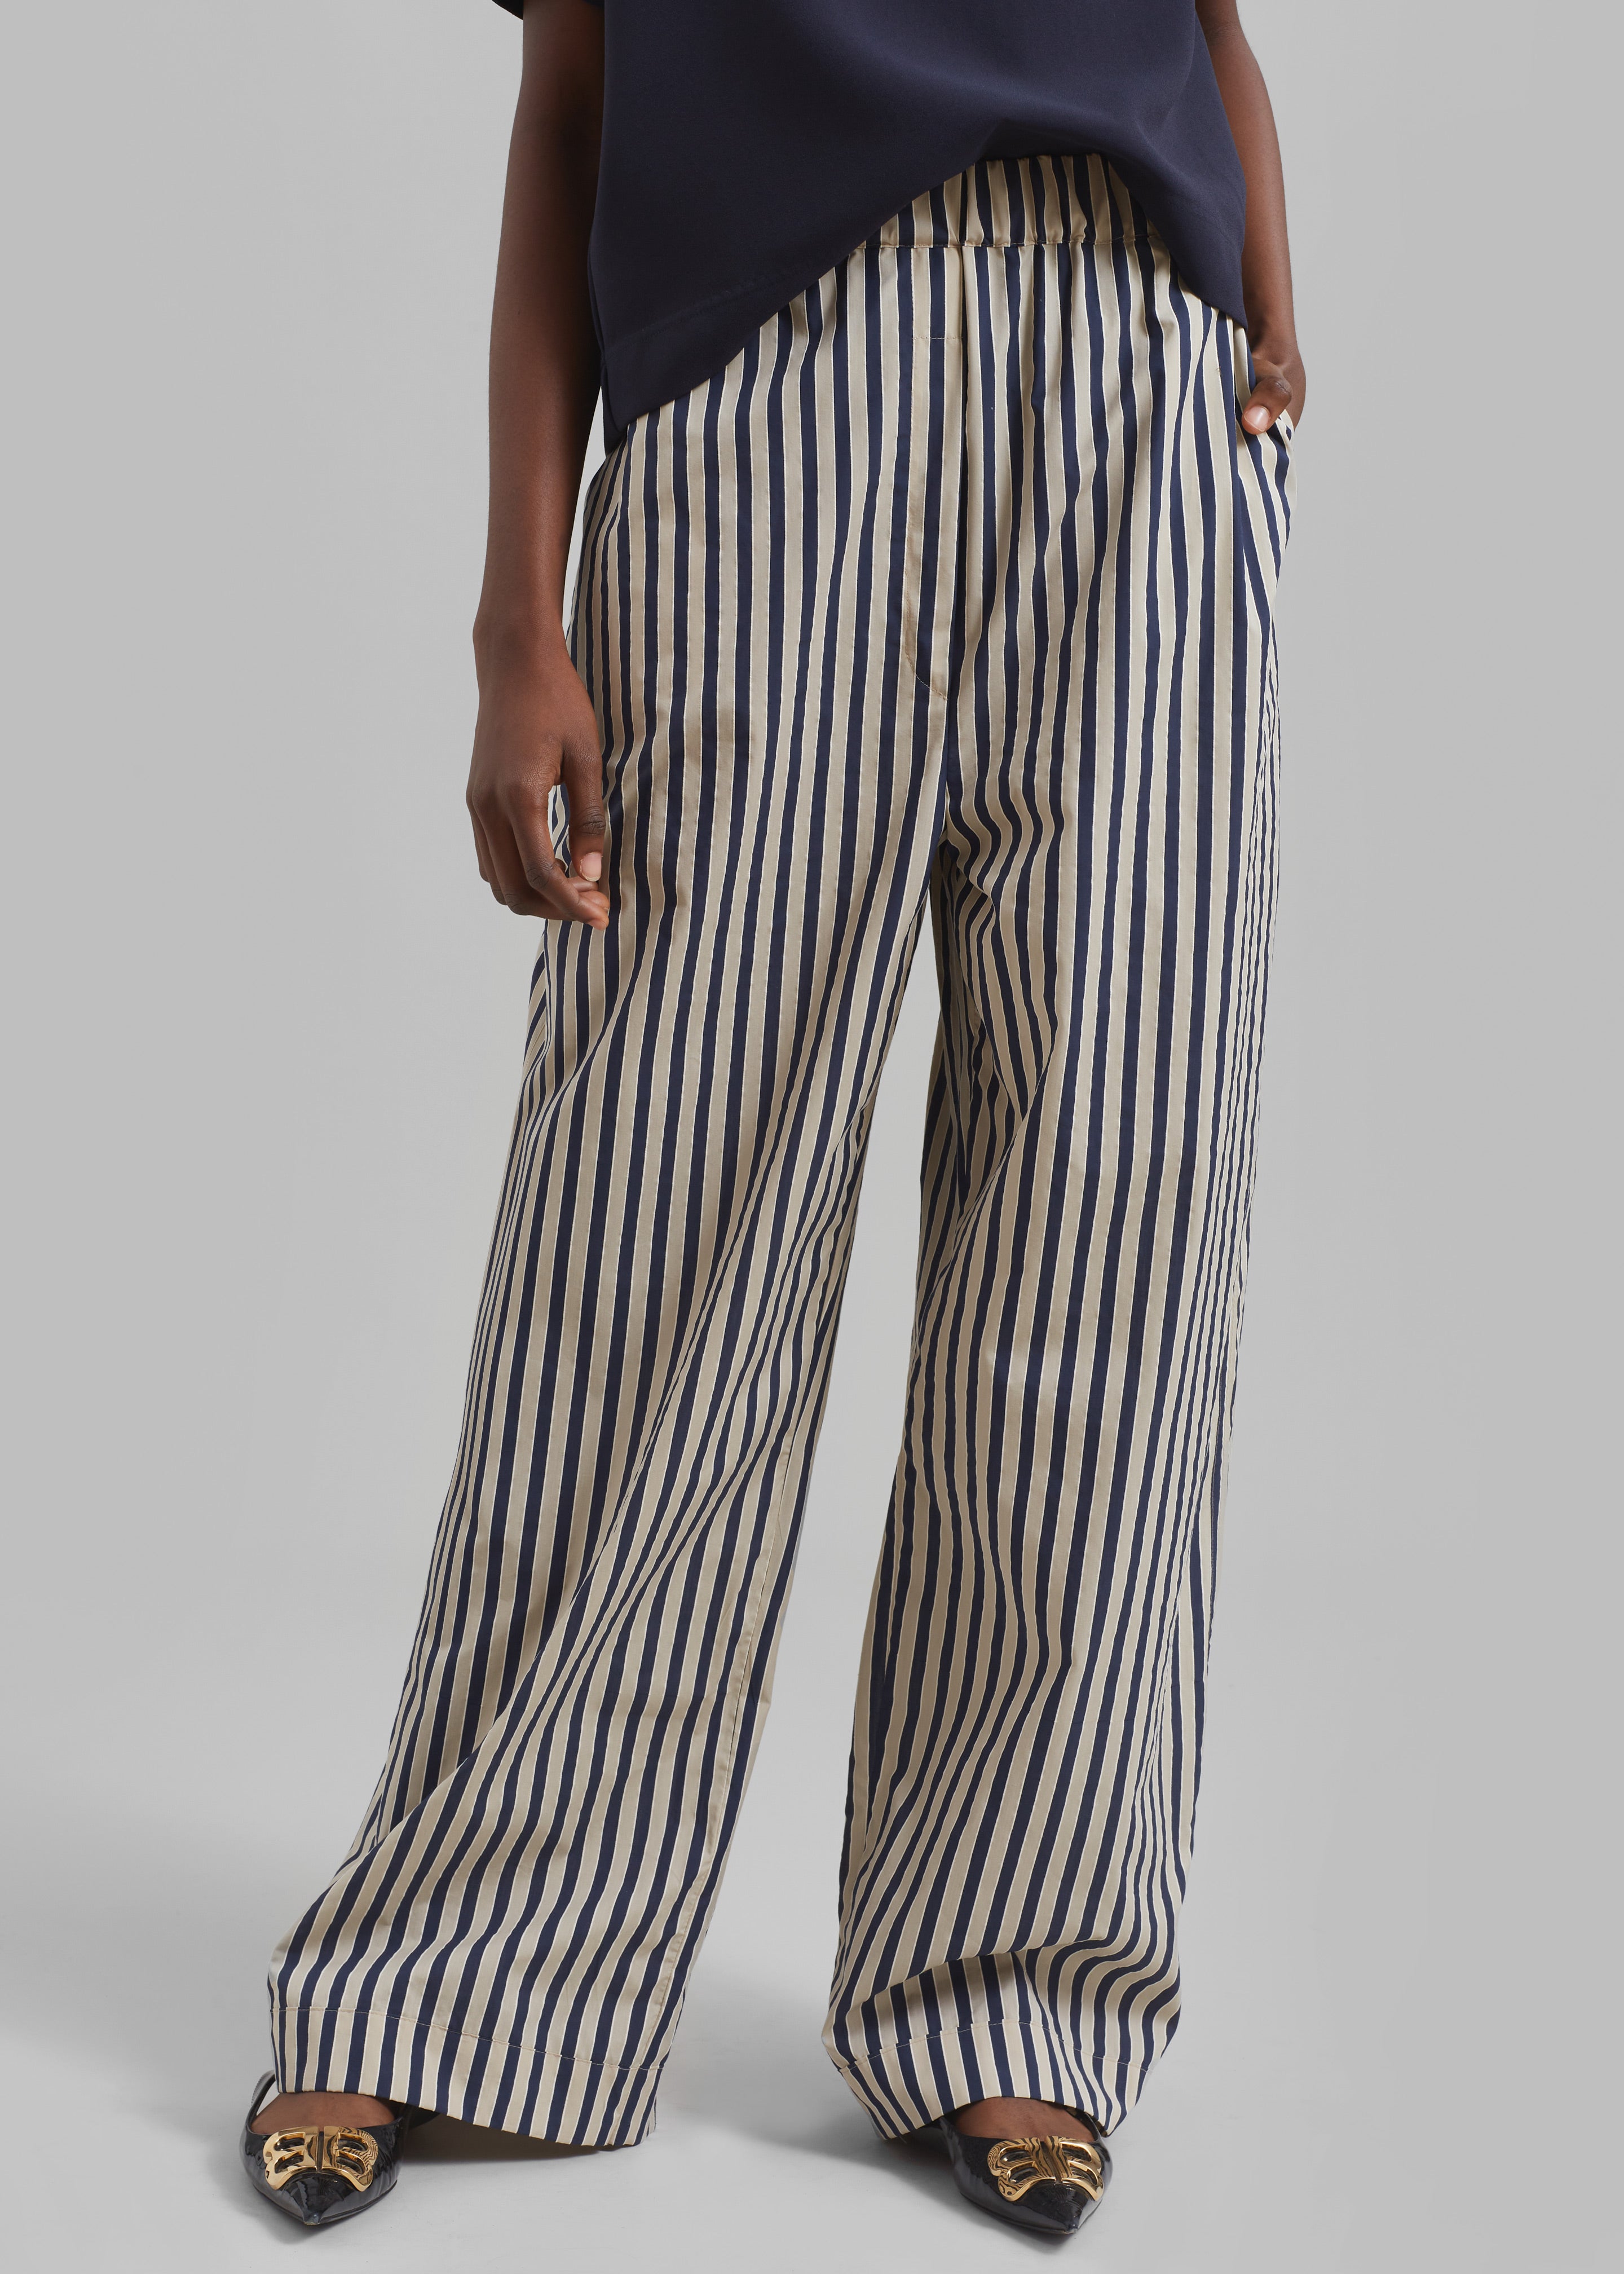 Mirca Textured Elastic Pants - Beige/Navy Multi Stripe